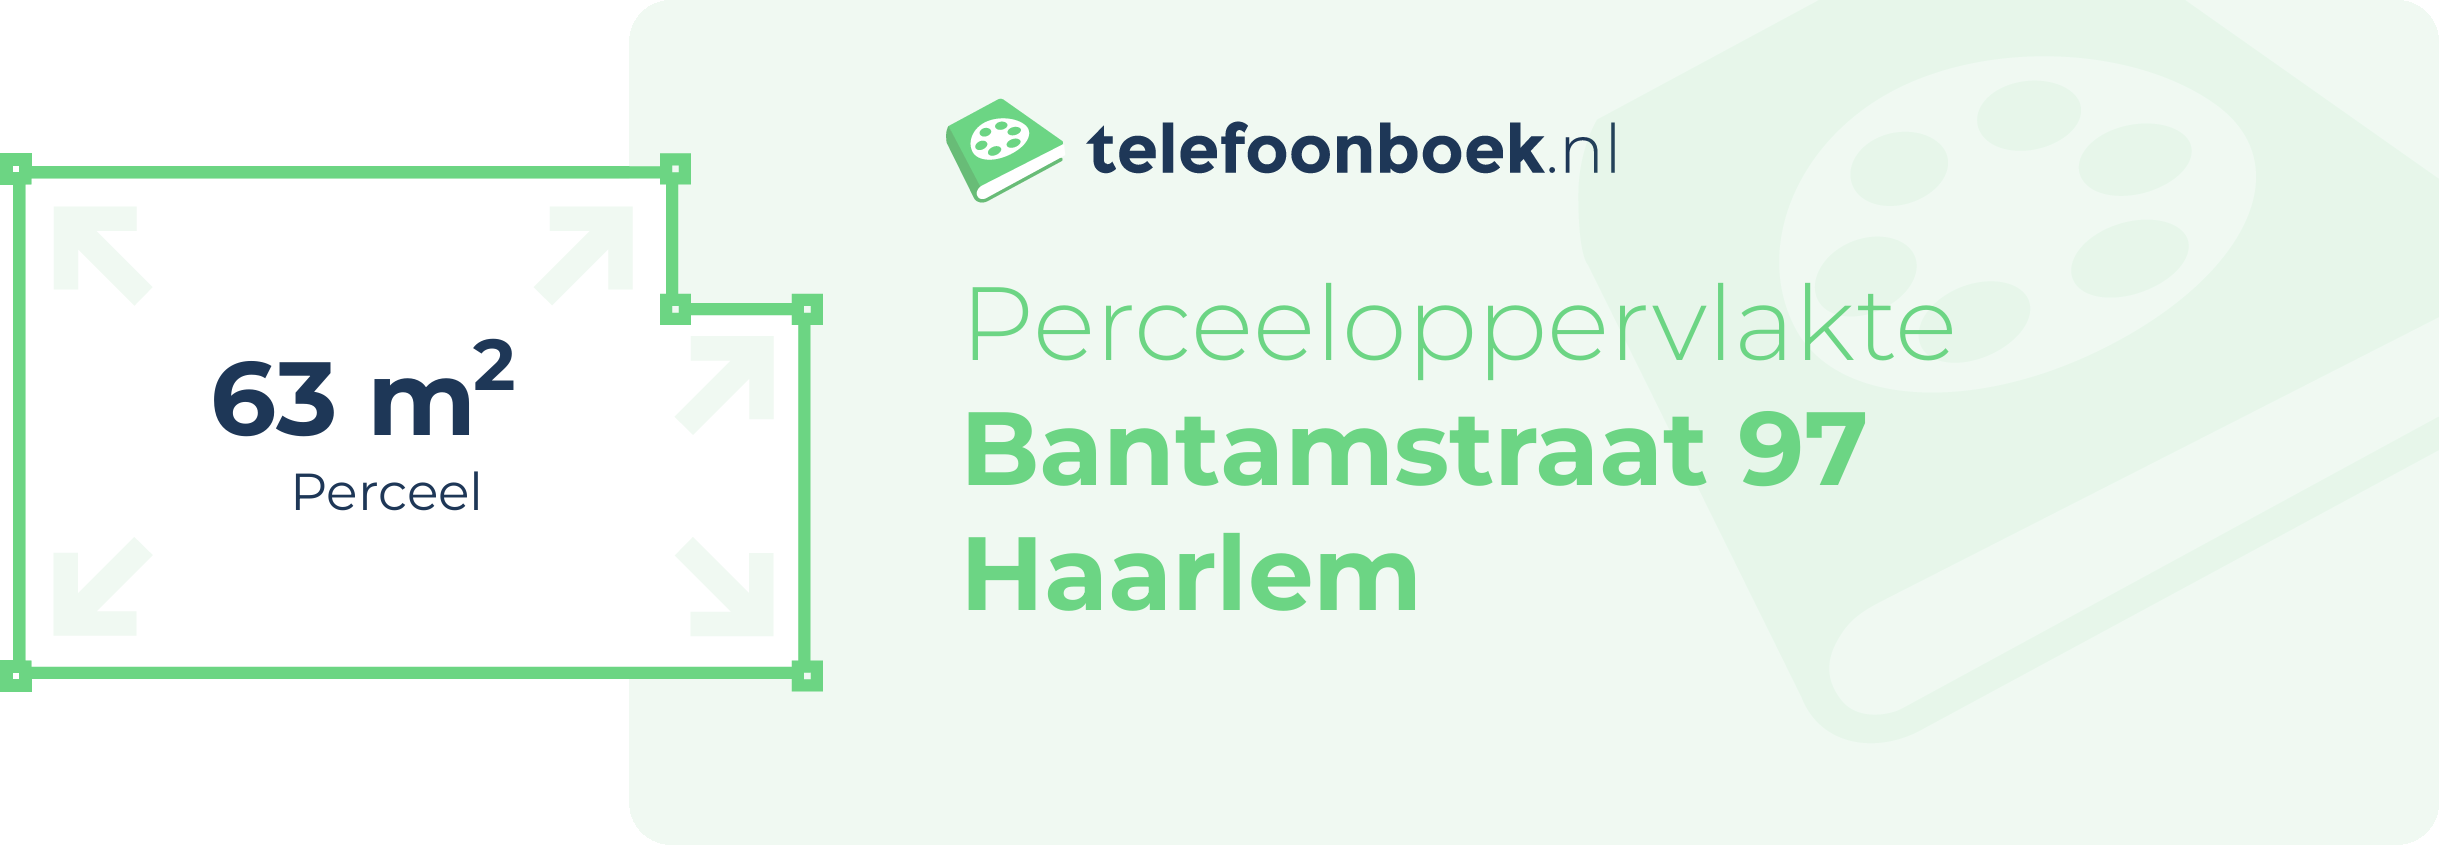 Perceeloppervlakte Bantamstraat 97 Haarlem